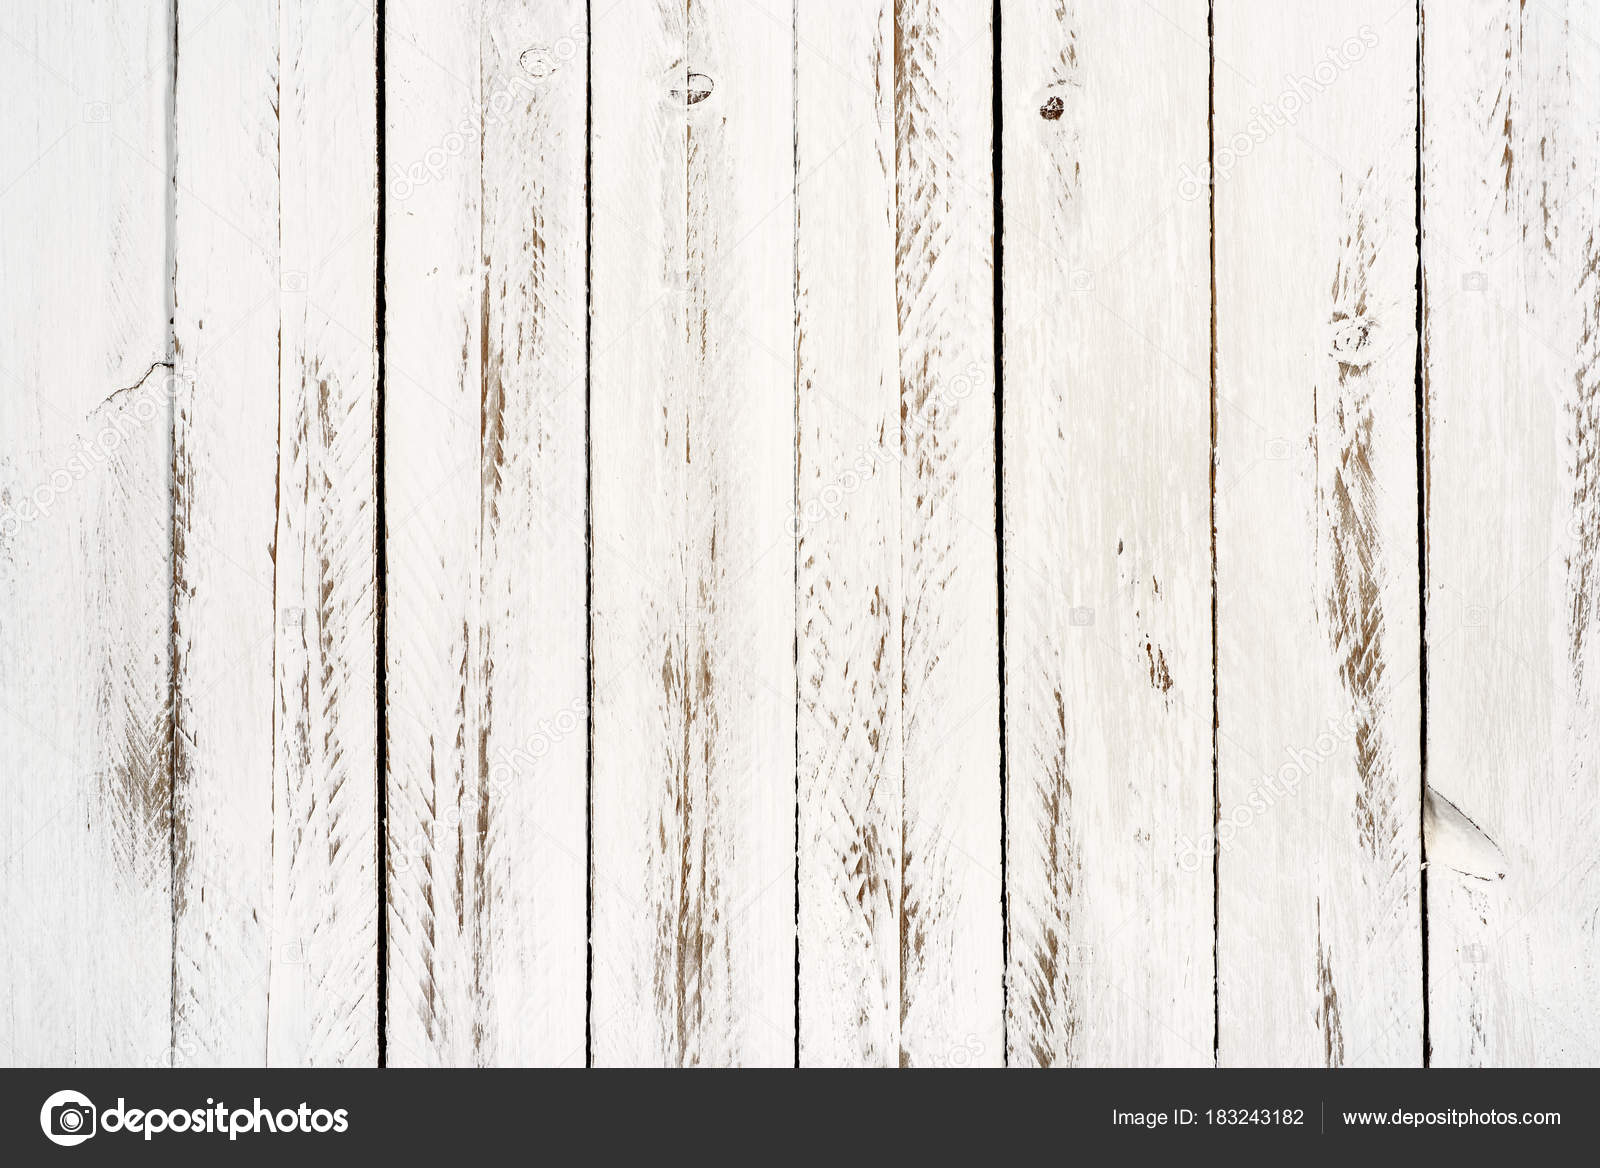 Nền gỗ trắng xếp lát: Nền gỗ trắng xếp lát mang đến cho không gian của bạn một vẻ đẹp thanh lịch và đơn giản. Với màu trắng sáng, nền gỗ này sẽ tạo nên một không gian tự nhiên và tươi mới.